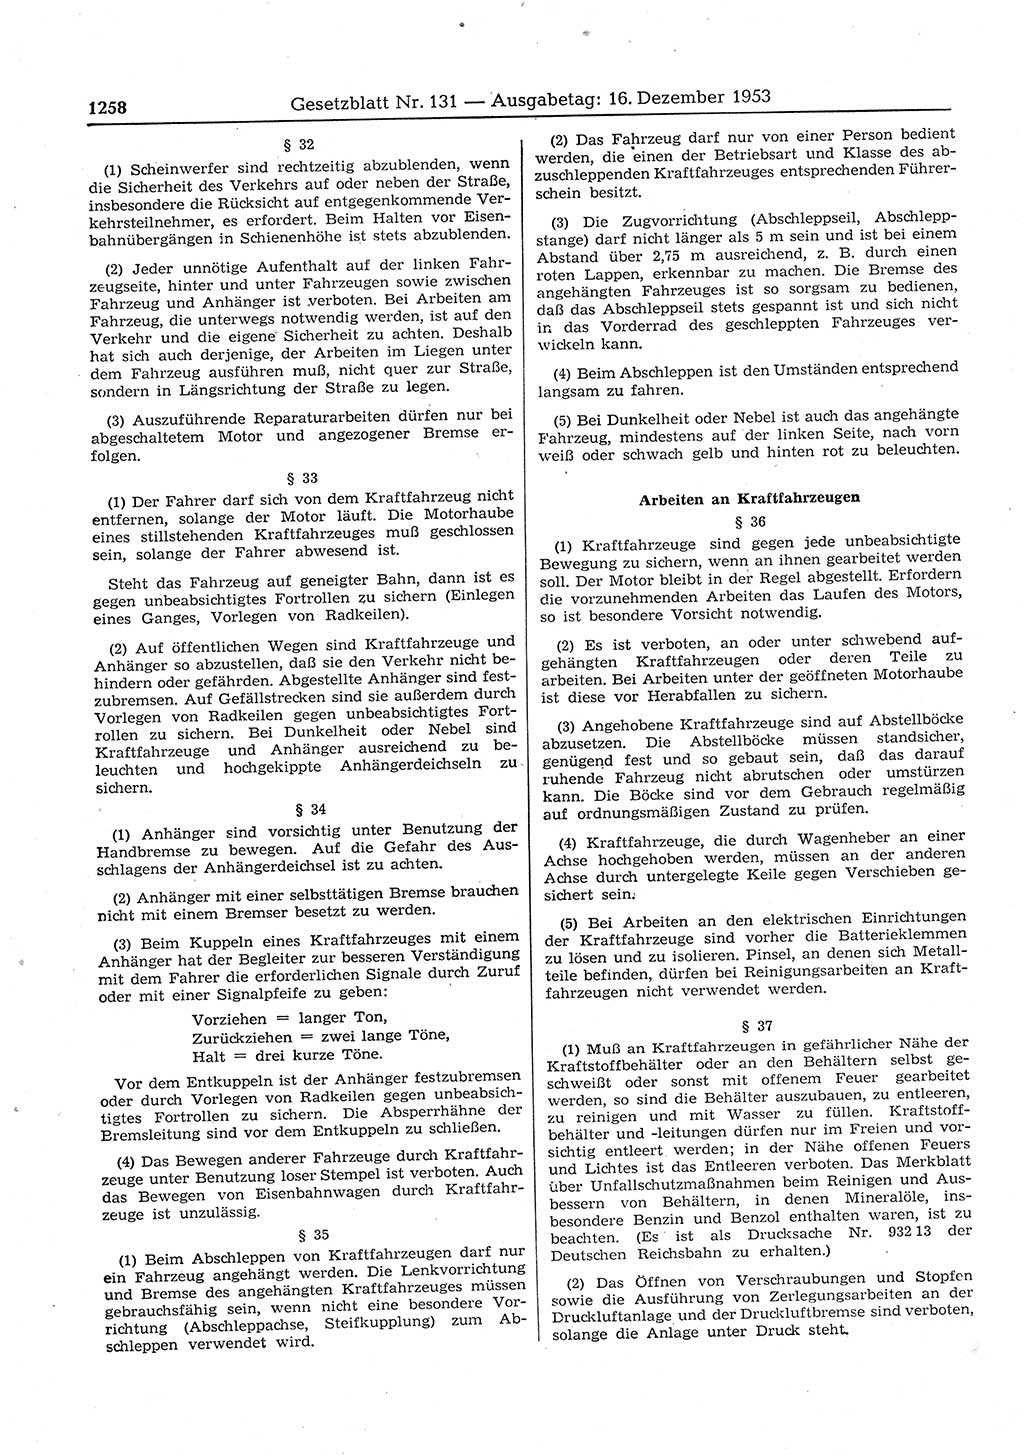 Gesetzblatt (GBl.) der Deutschen Demokratischen Republik (DDR) 1953, Seite 1258 (GBl. DDR 1953, S. 1258)